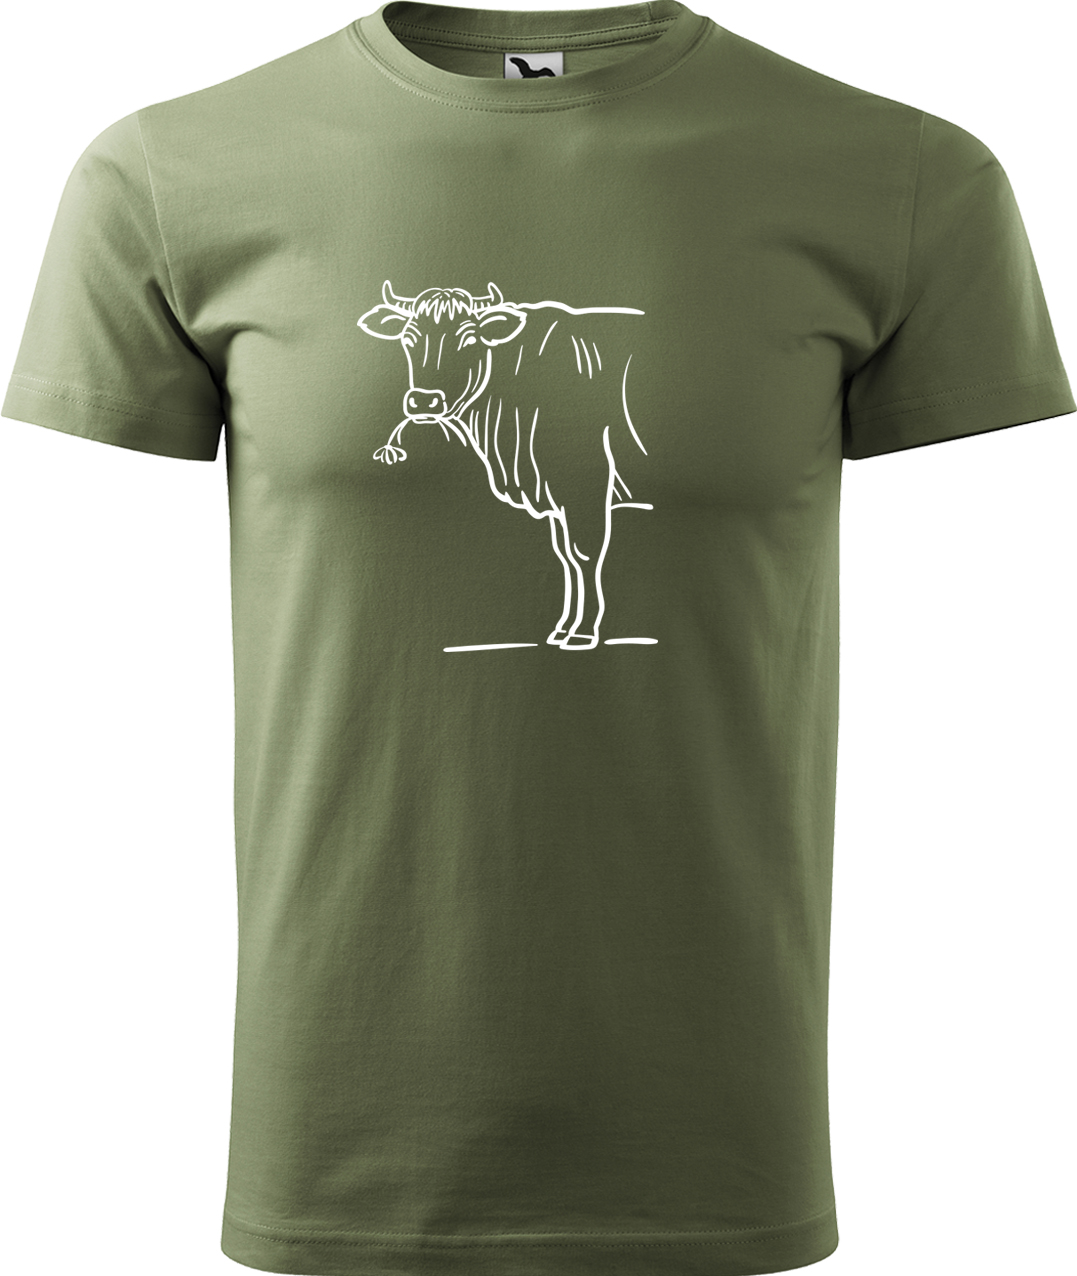 Pánské tričko s krávou - Býk Velikost: 4XL, Barva: Světlá khaki (28), Střih: pánský